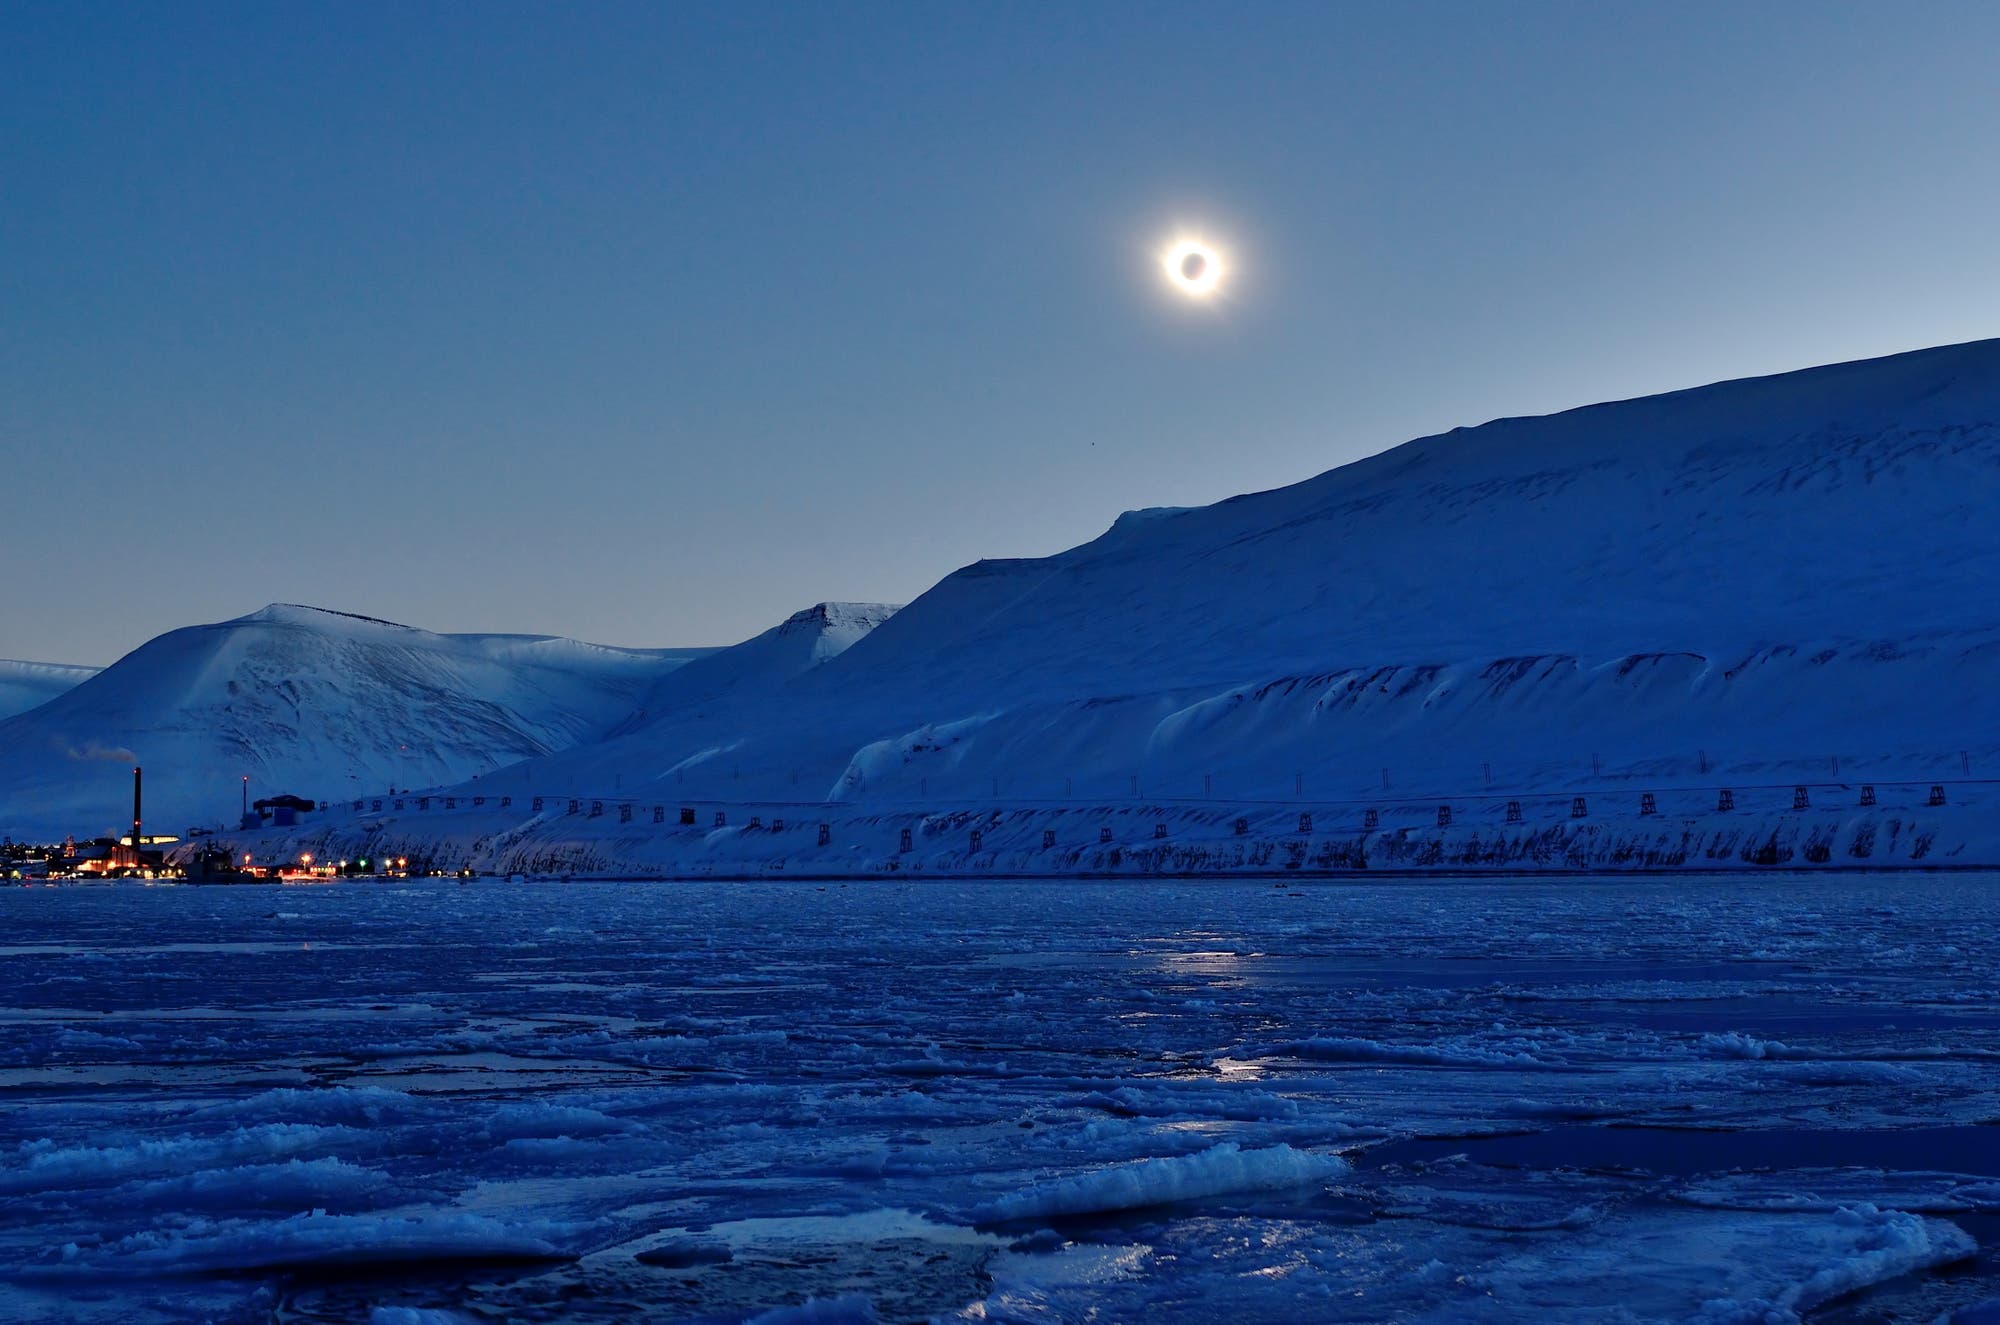 Arktis Sonnenfinsternis 2015